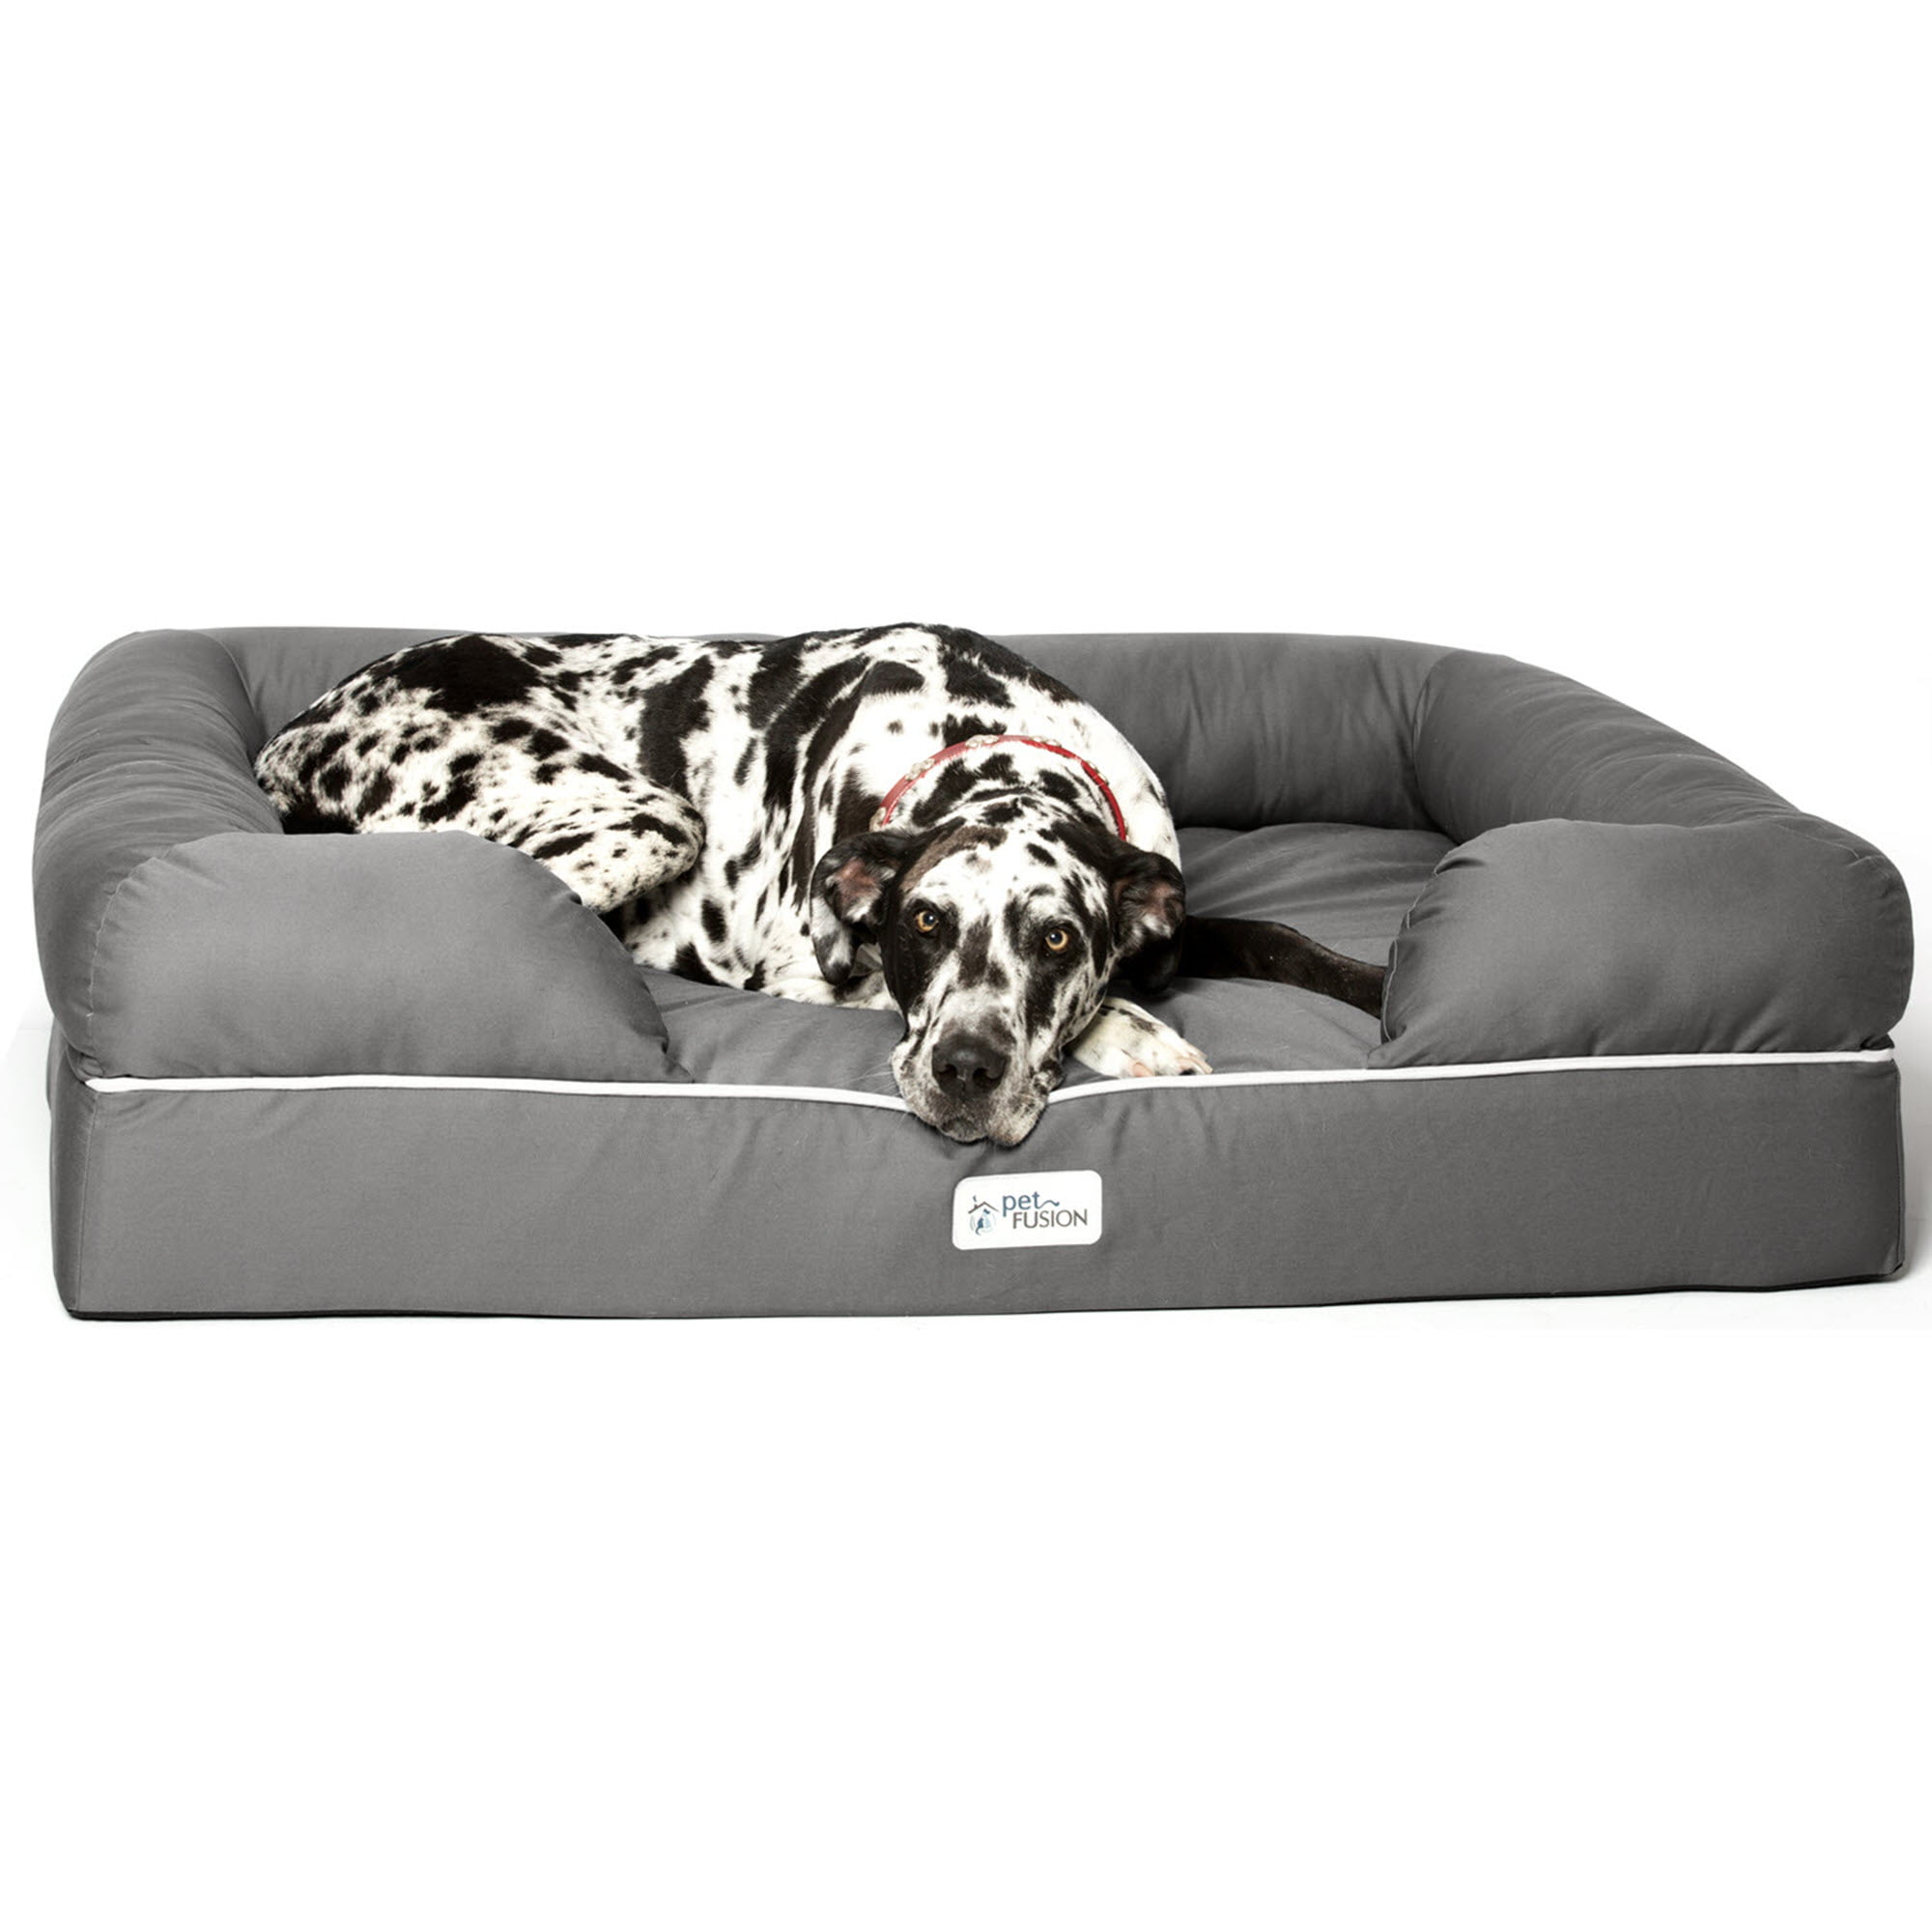 cheap dog beds xxl